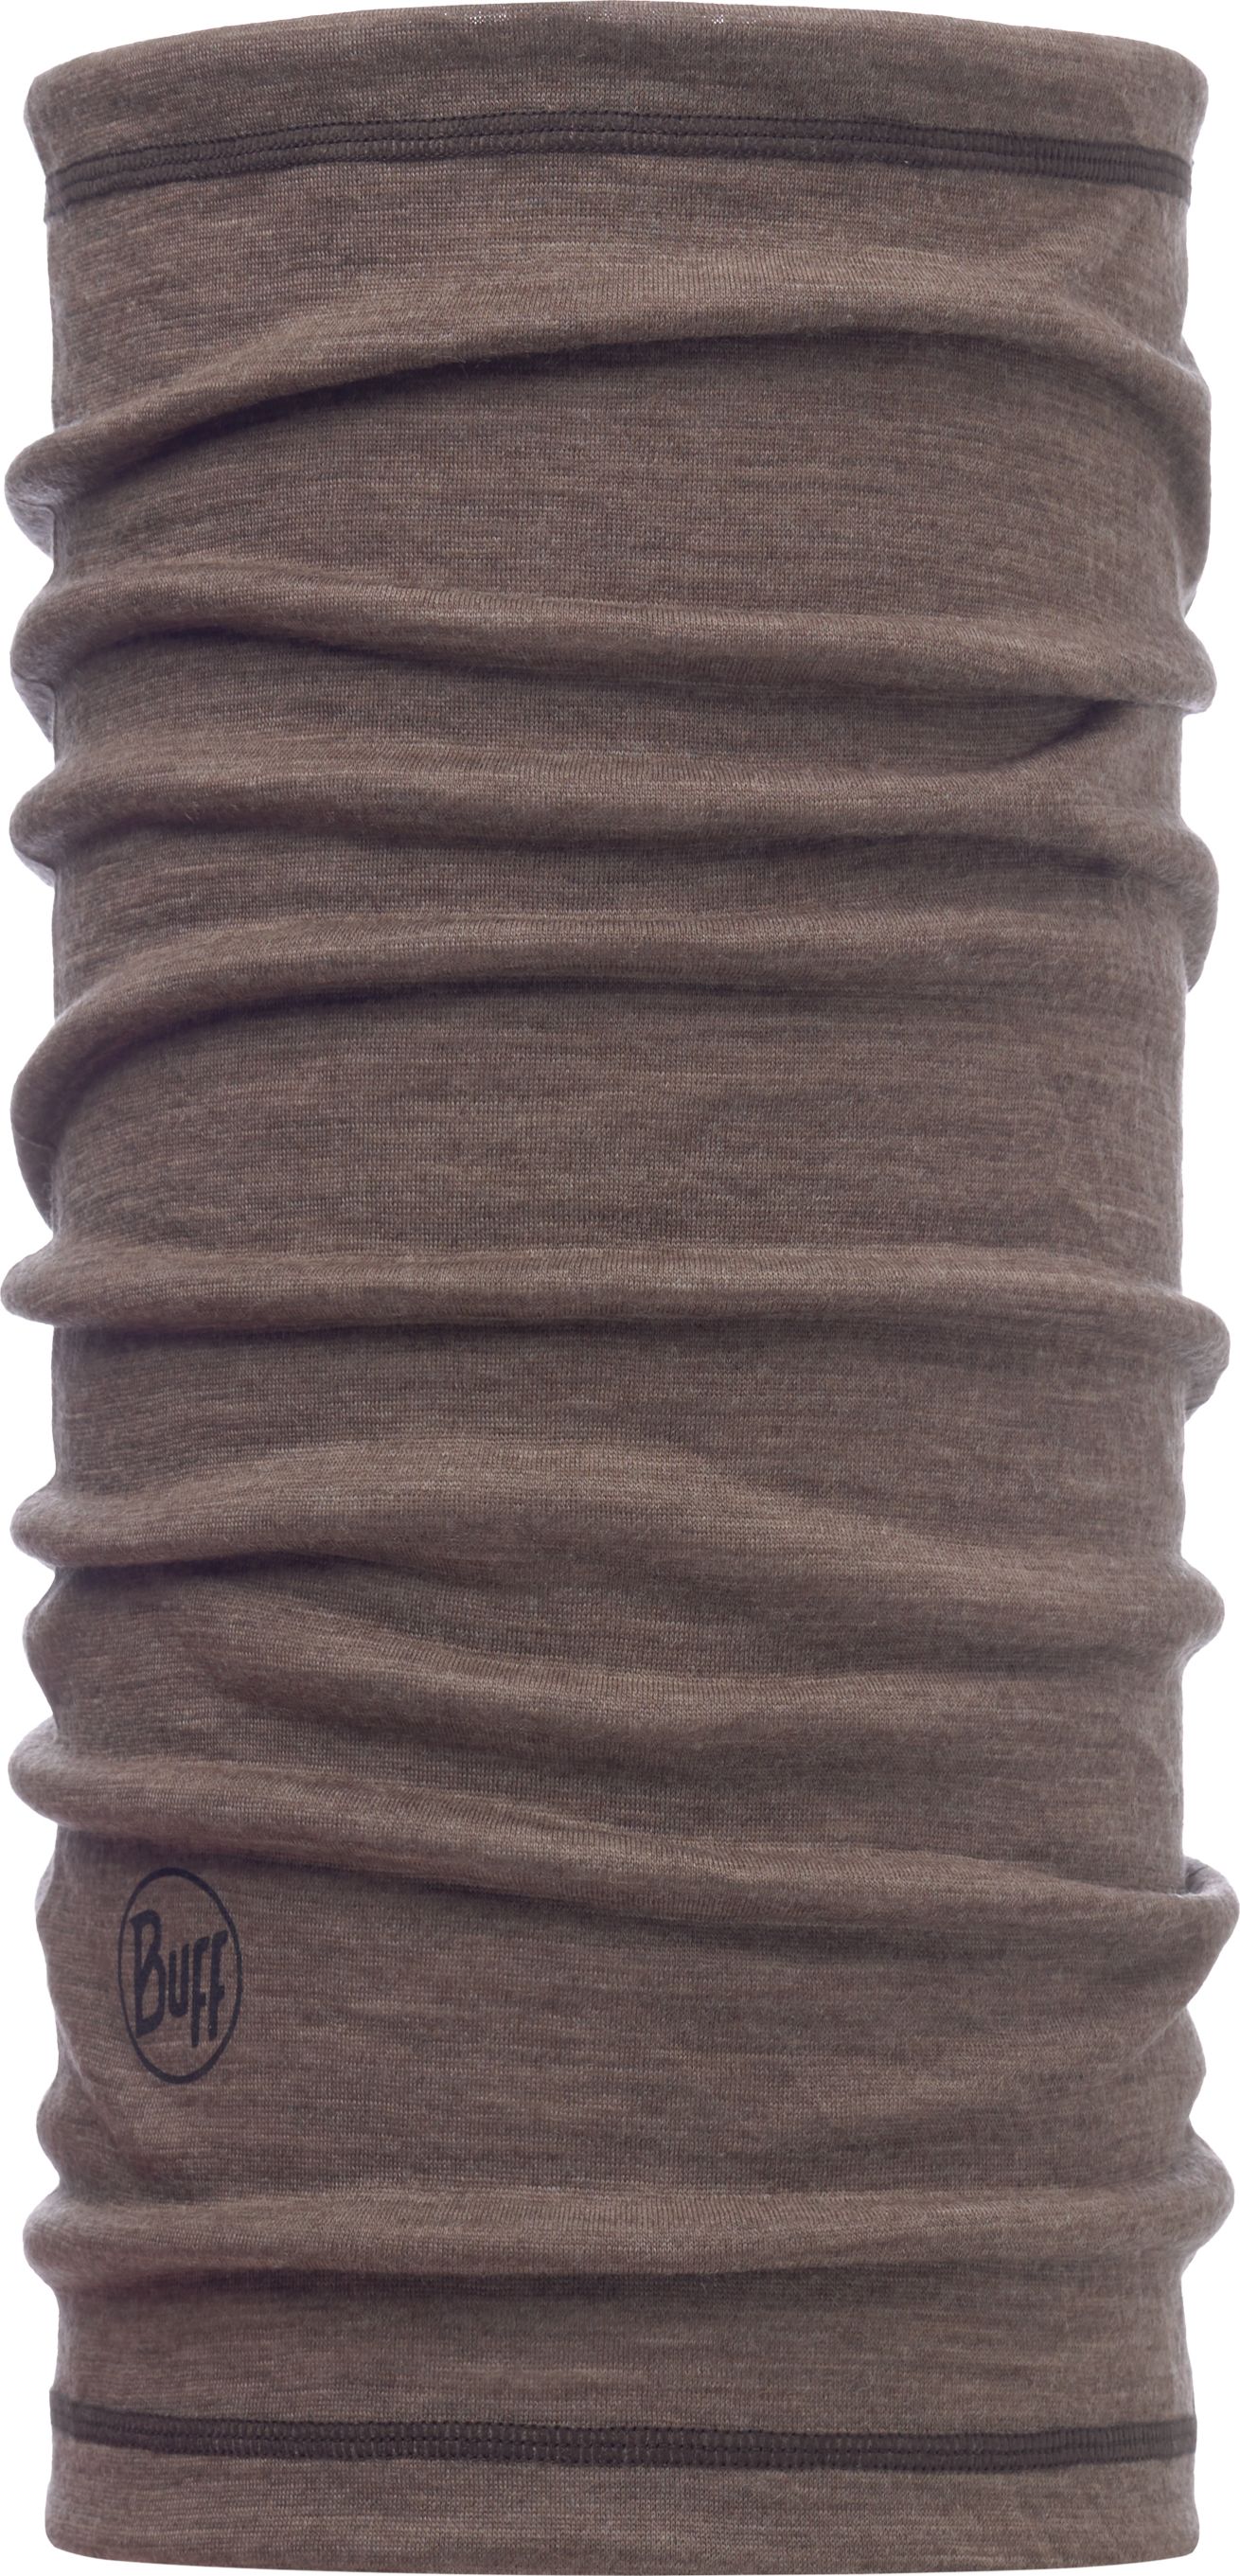 Бандана Buff 3/4 Lightweight Merino Wool Solid Walnut Brown, цвет: коричневый. 117064.327.10.00. Размер универсальный